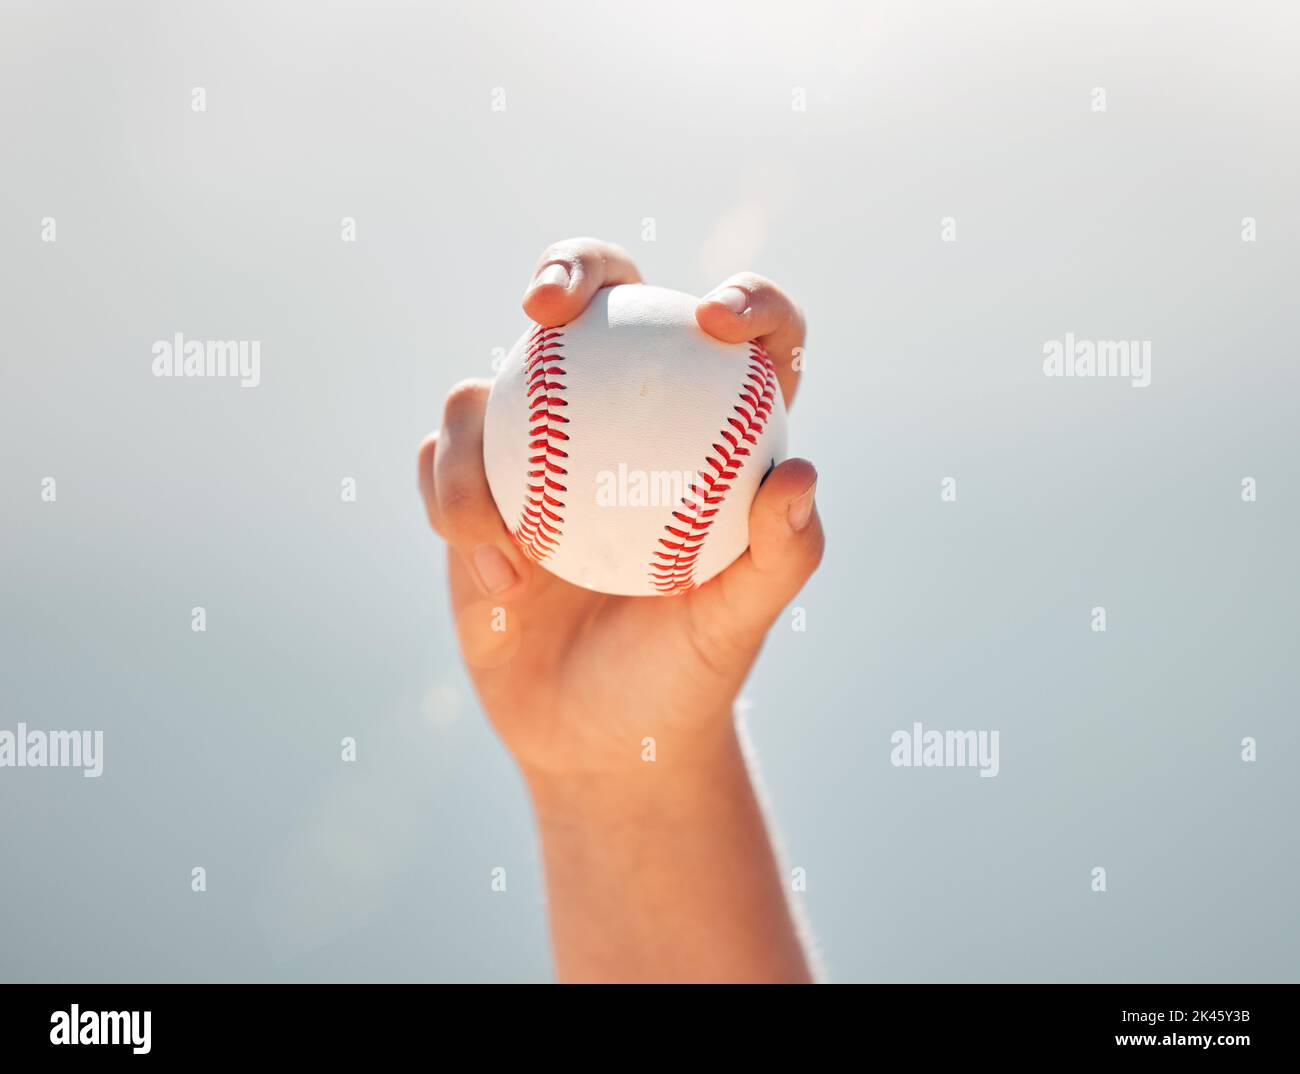 Le baseball, les mains des athlètes et les sports de balle tout en montrant l'adhérence du pichet contre un ciel bleu clair. Exercice, jeu et softball avec un joueur professionnel Banque D'Images